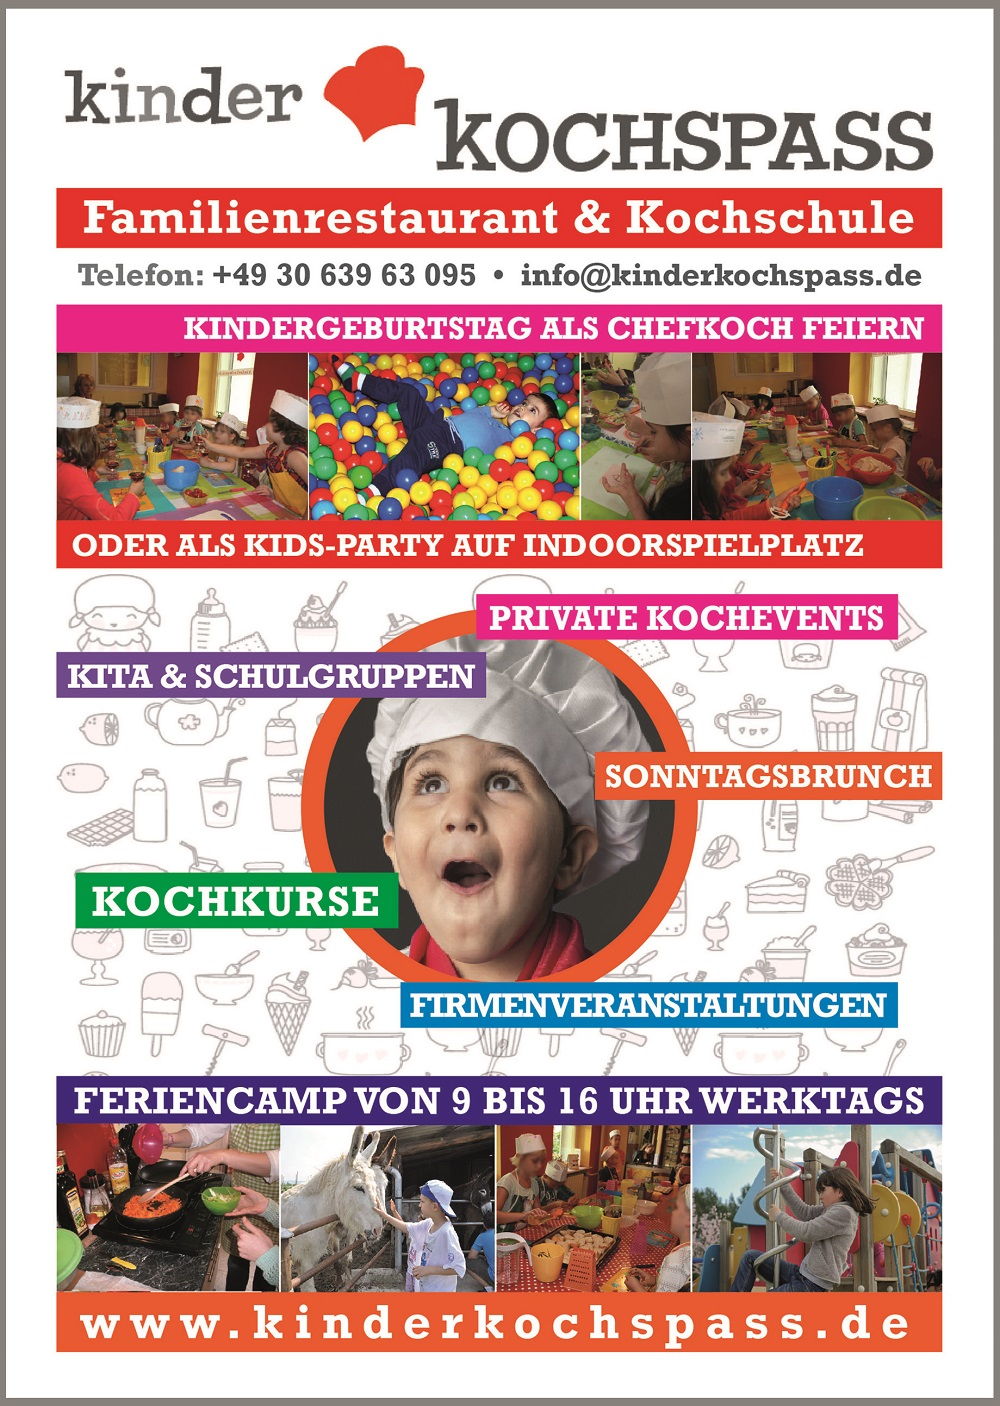 Семейный ресторан Kinder KOCHSPASS в Берлине